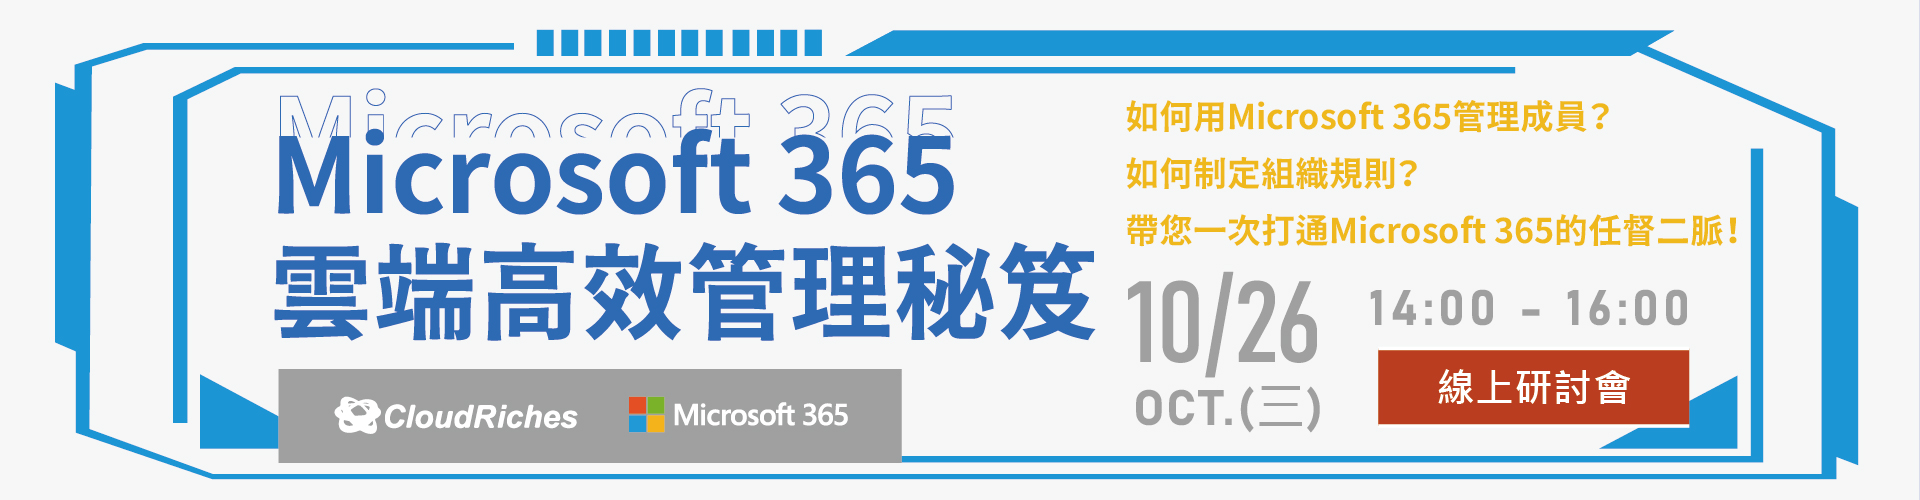 【線上研討會】10/26 Microsoft 365 雲端高效管理秘笈